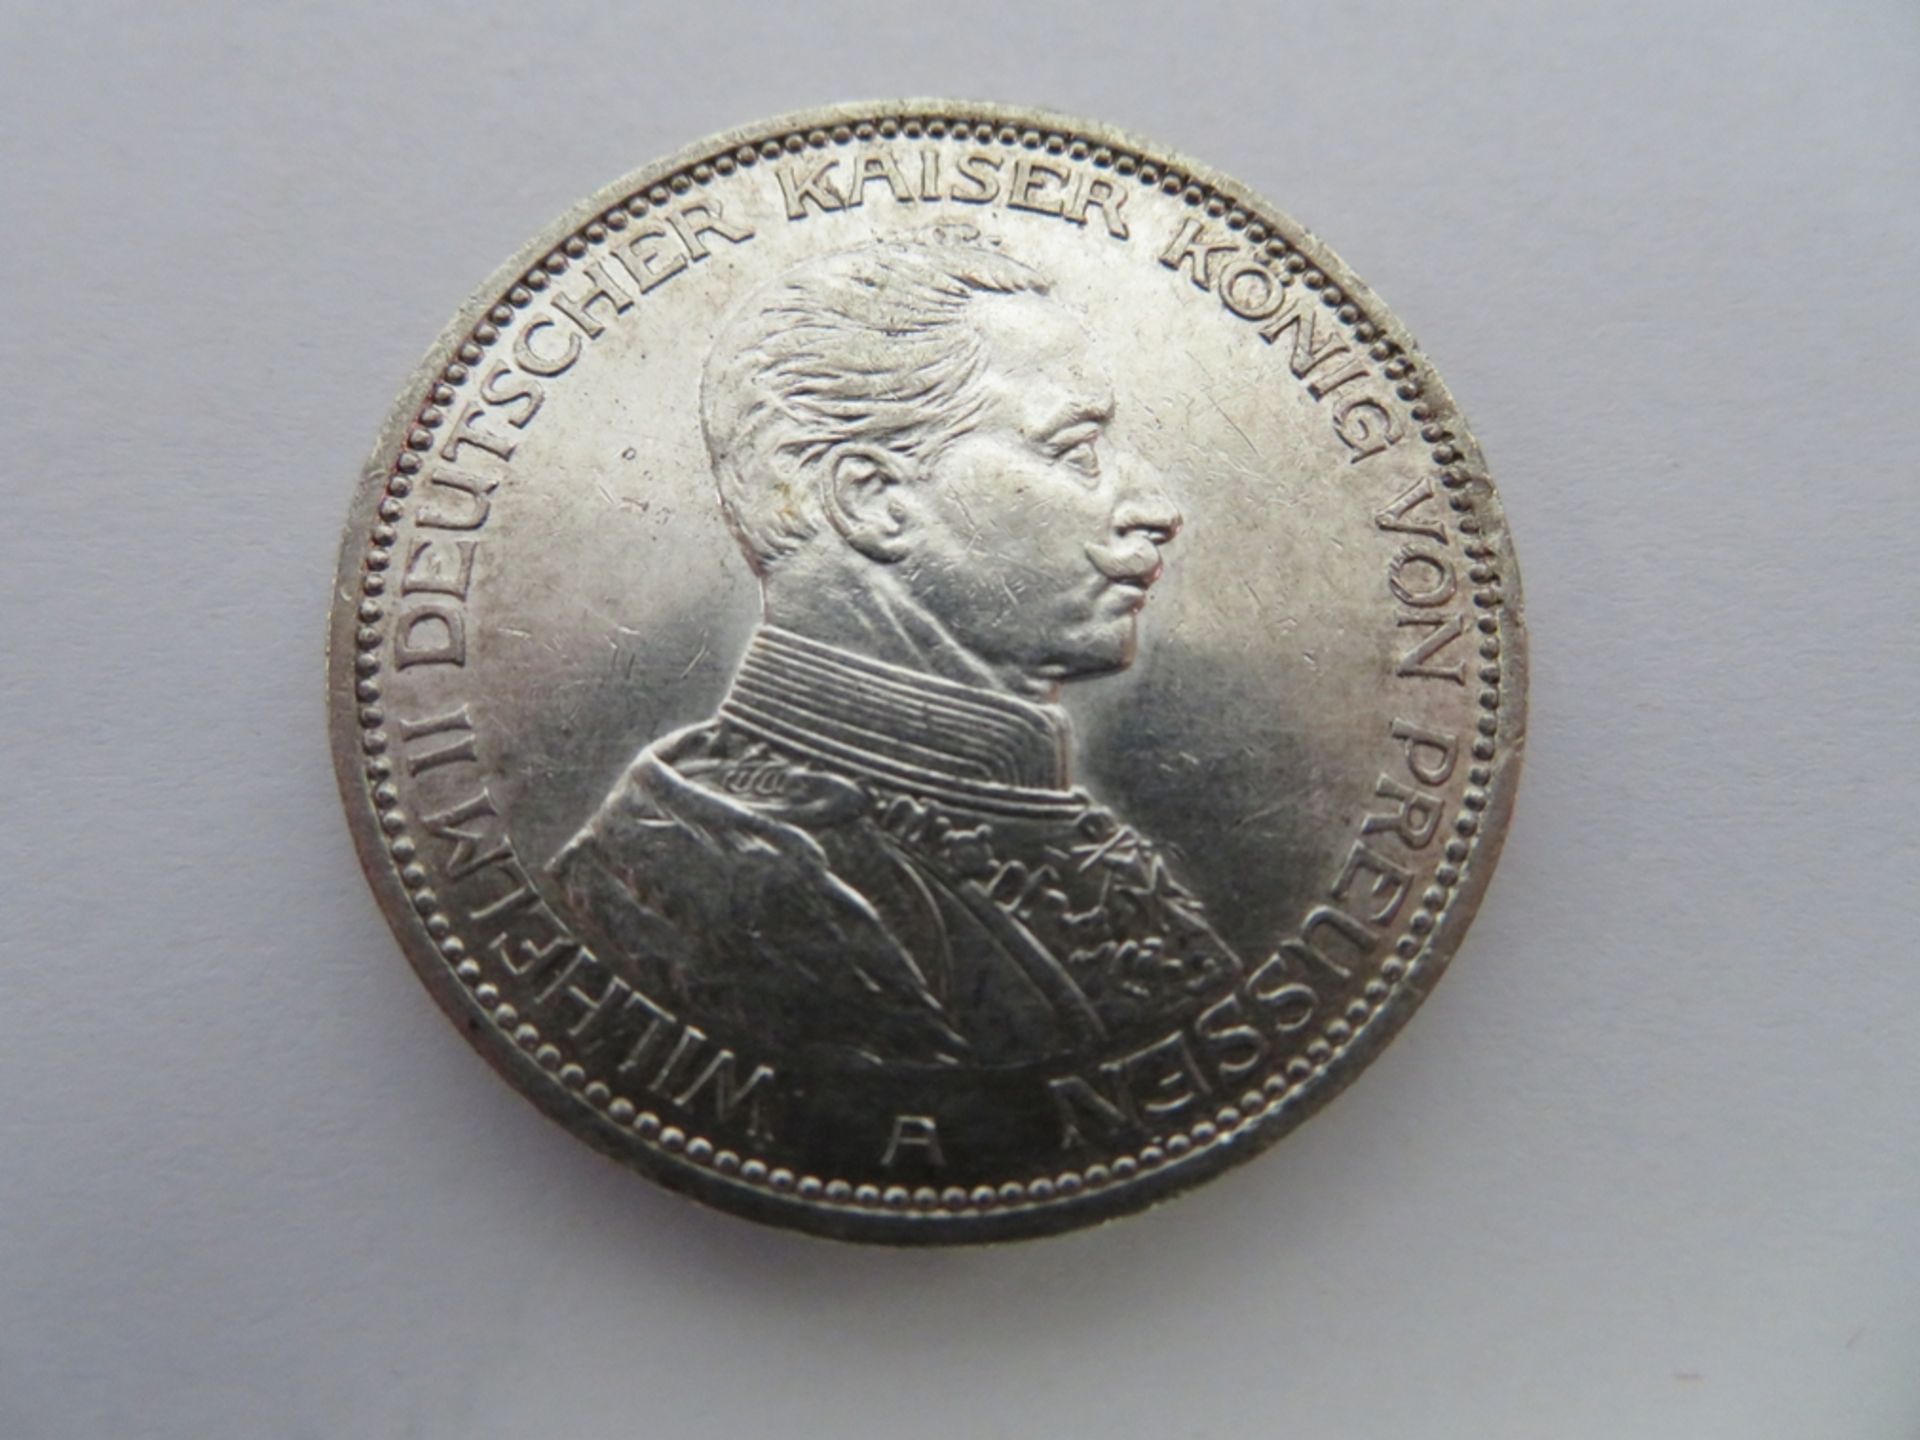 Silbermünze, 3 Mark, 1914 A, Wilhelm II. von Preußen, 25 jähriges Regierungsjubiläum, d 3,4 cm.